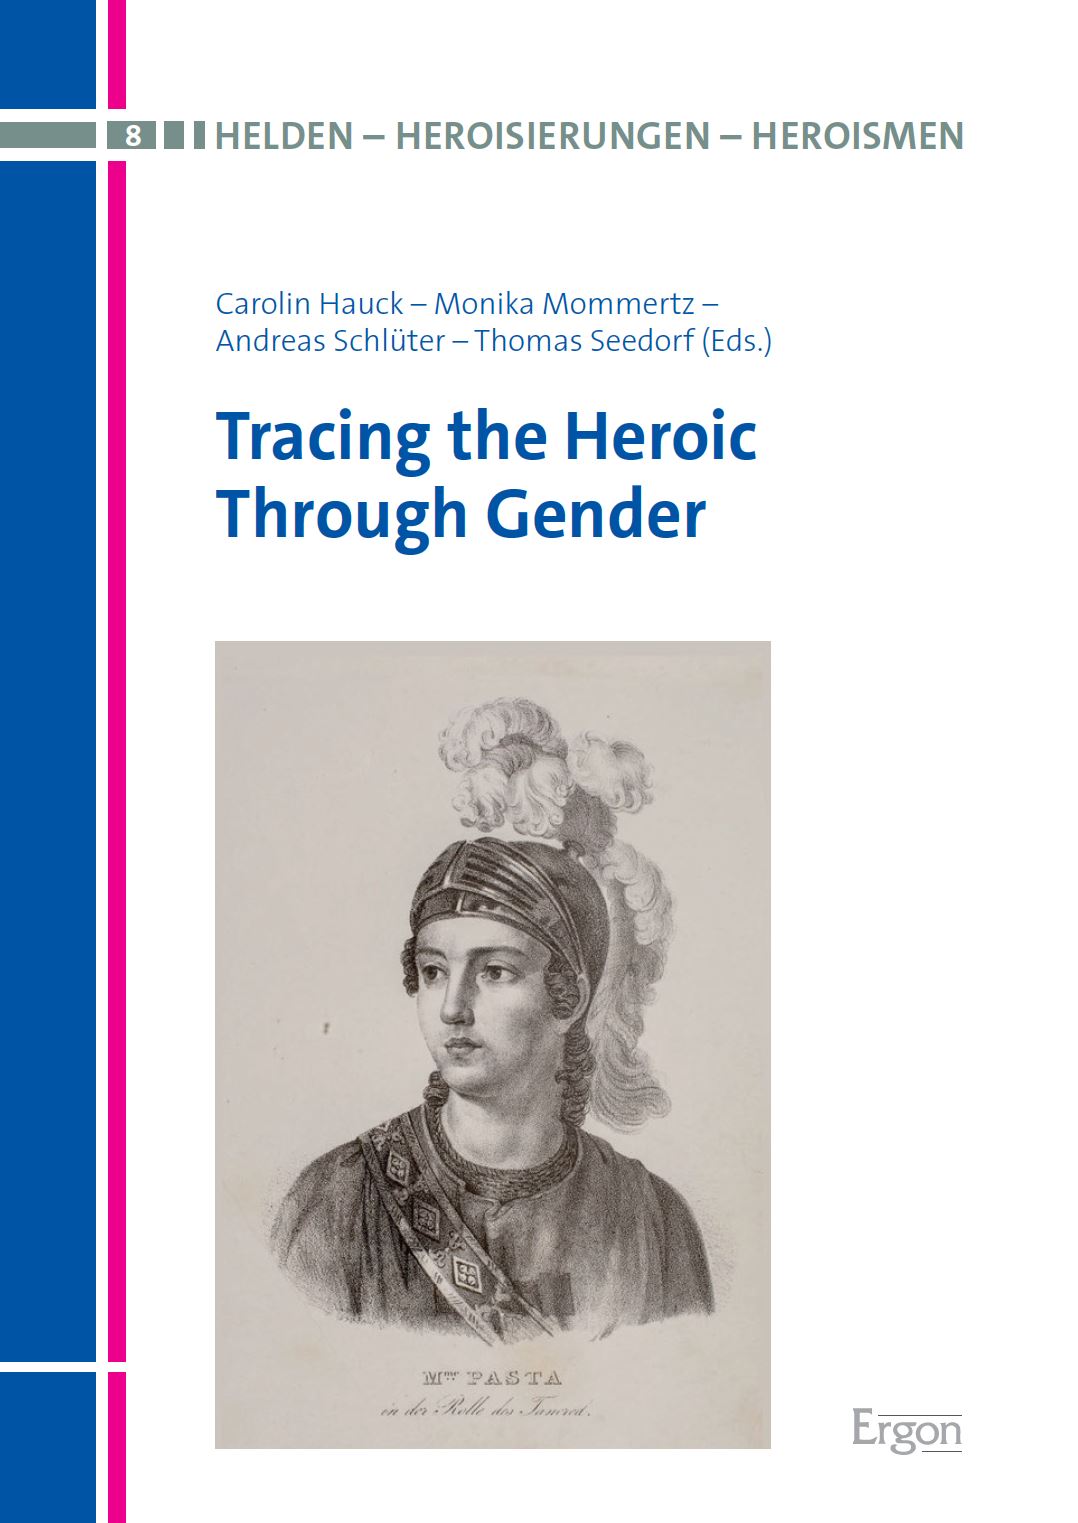 Neuerscheinung: „Tracing the Heroic Through Gender“